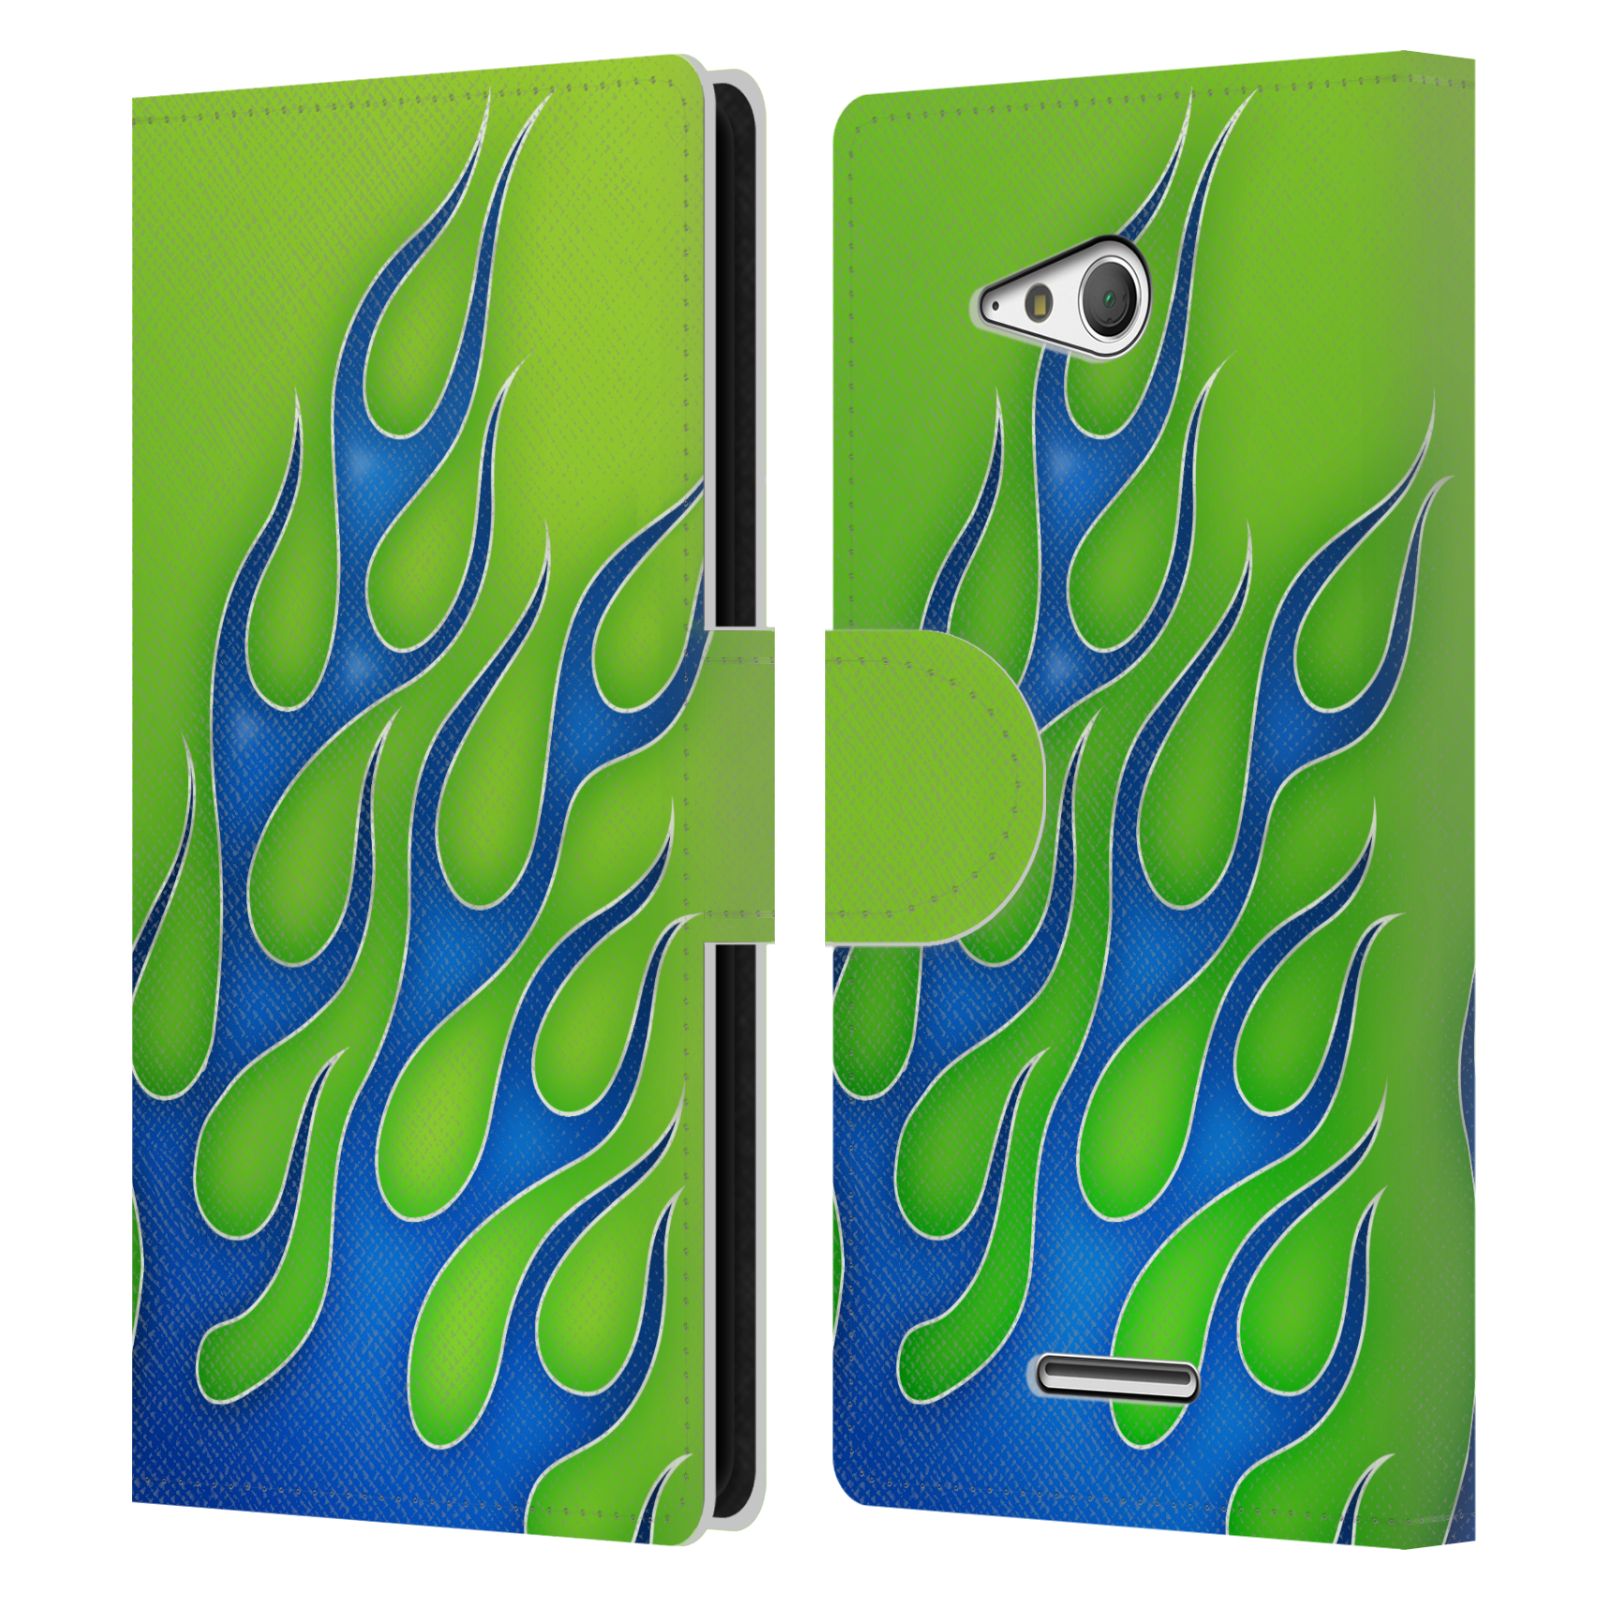 HEAD CASE Flipové pouzdro pro mobil SONY XPERIA E4g barevné ohnivé plameny modrá a zelená